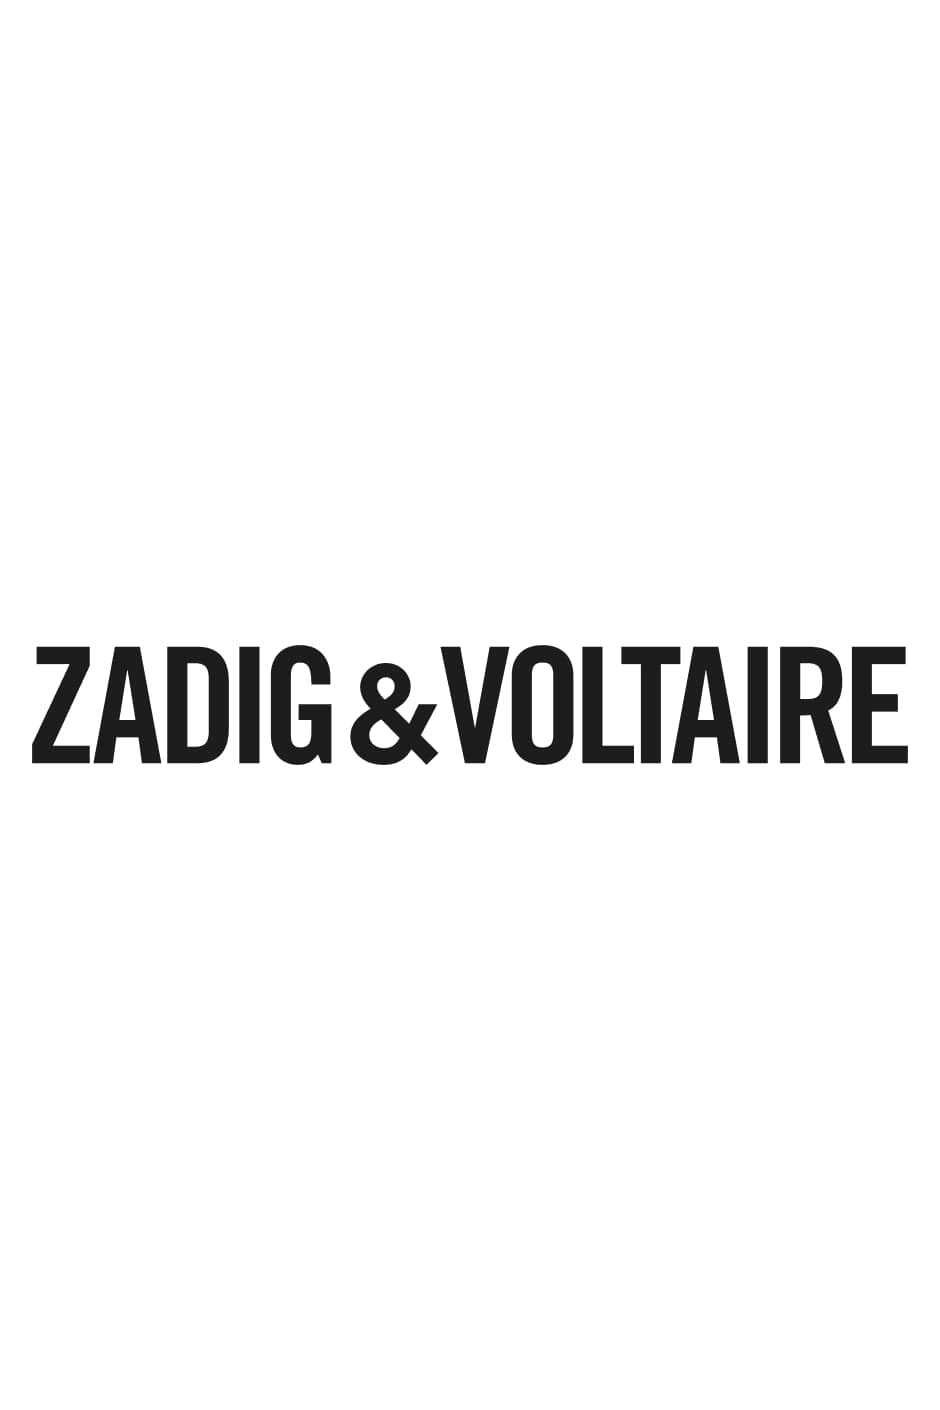 Lederhose David Leder - Zadig & Voltaire